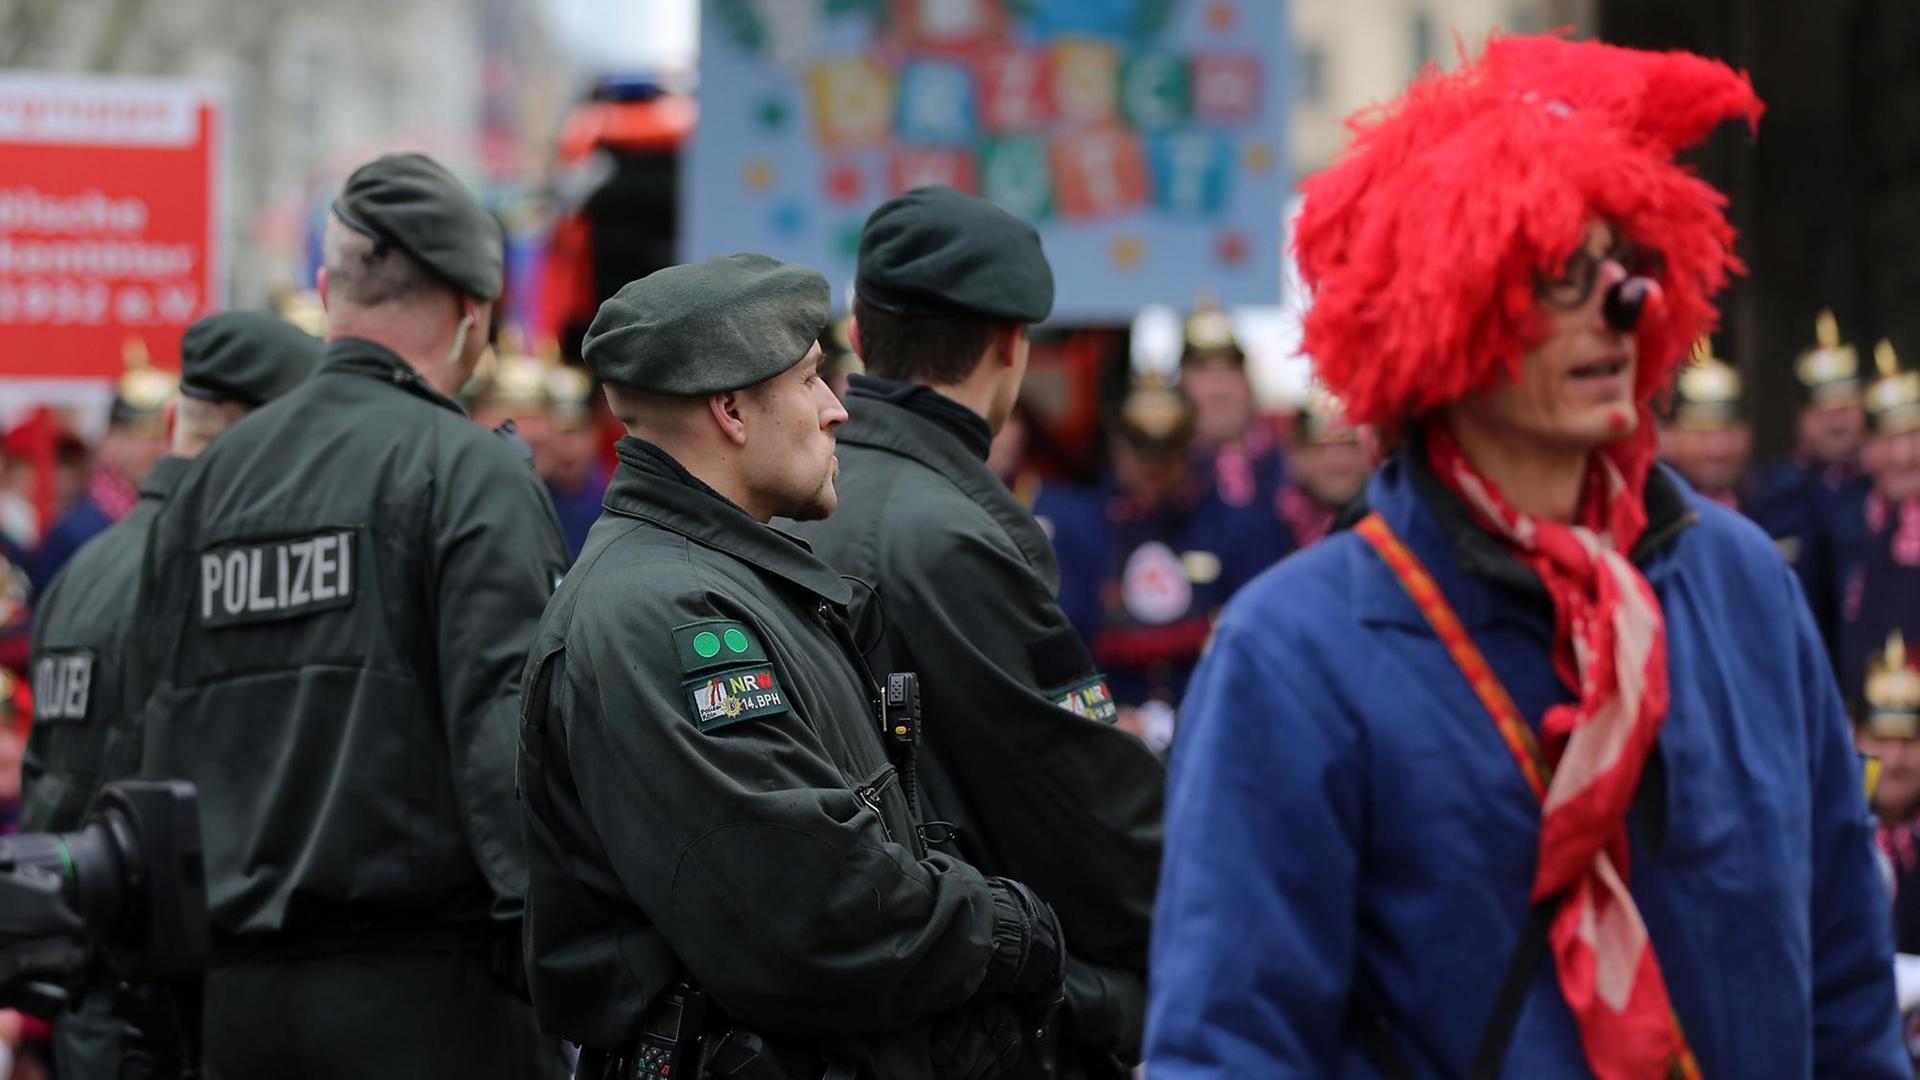 Polizisten stehen am 16.02.2015 in Köln (Nordrhein-Westfalen) neben Karnevalisten am Zugweg.